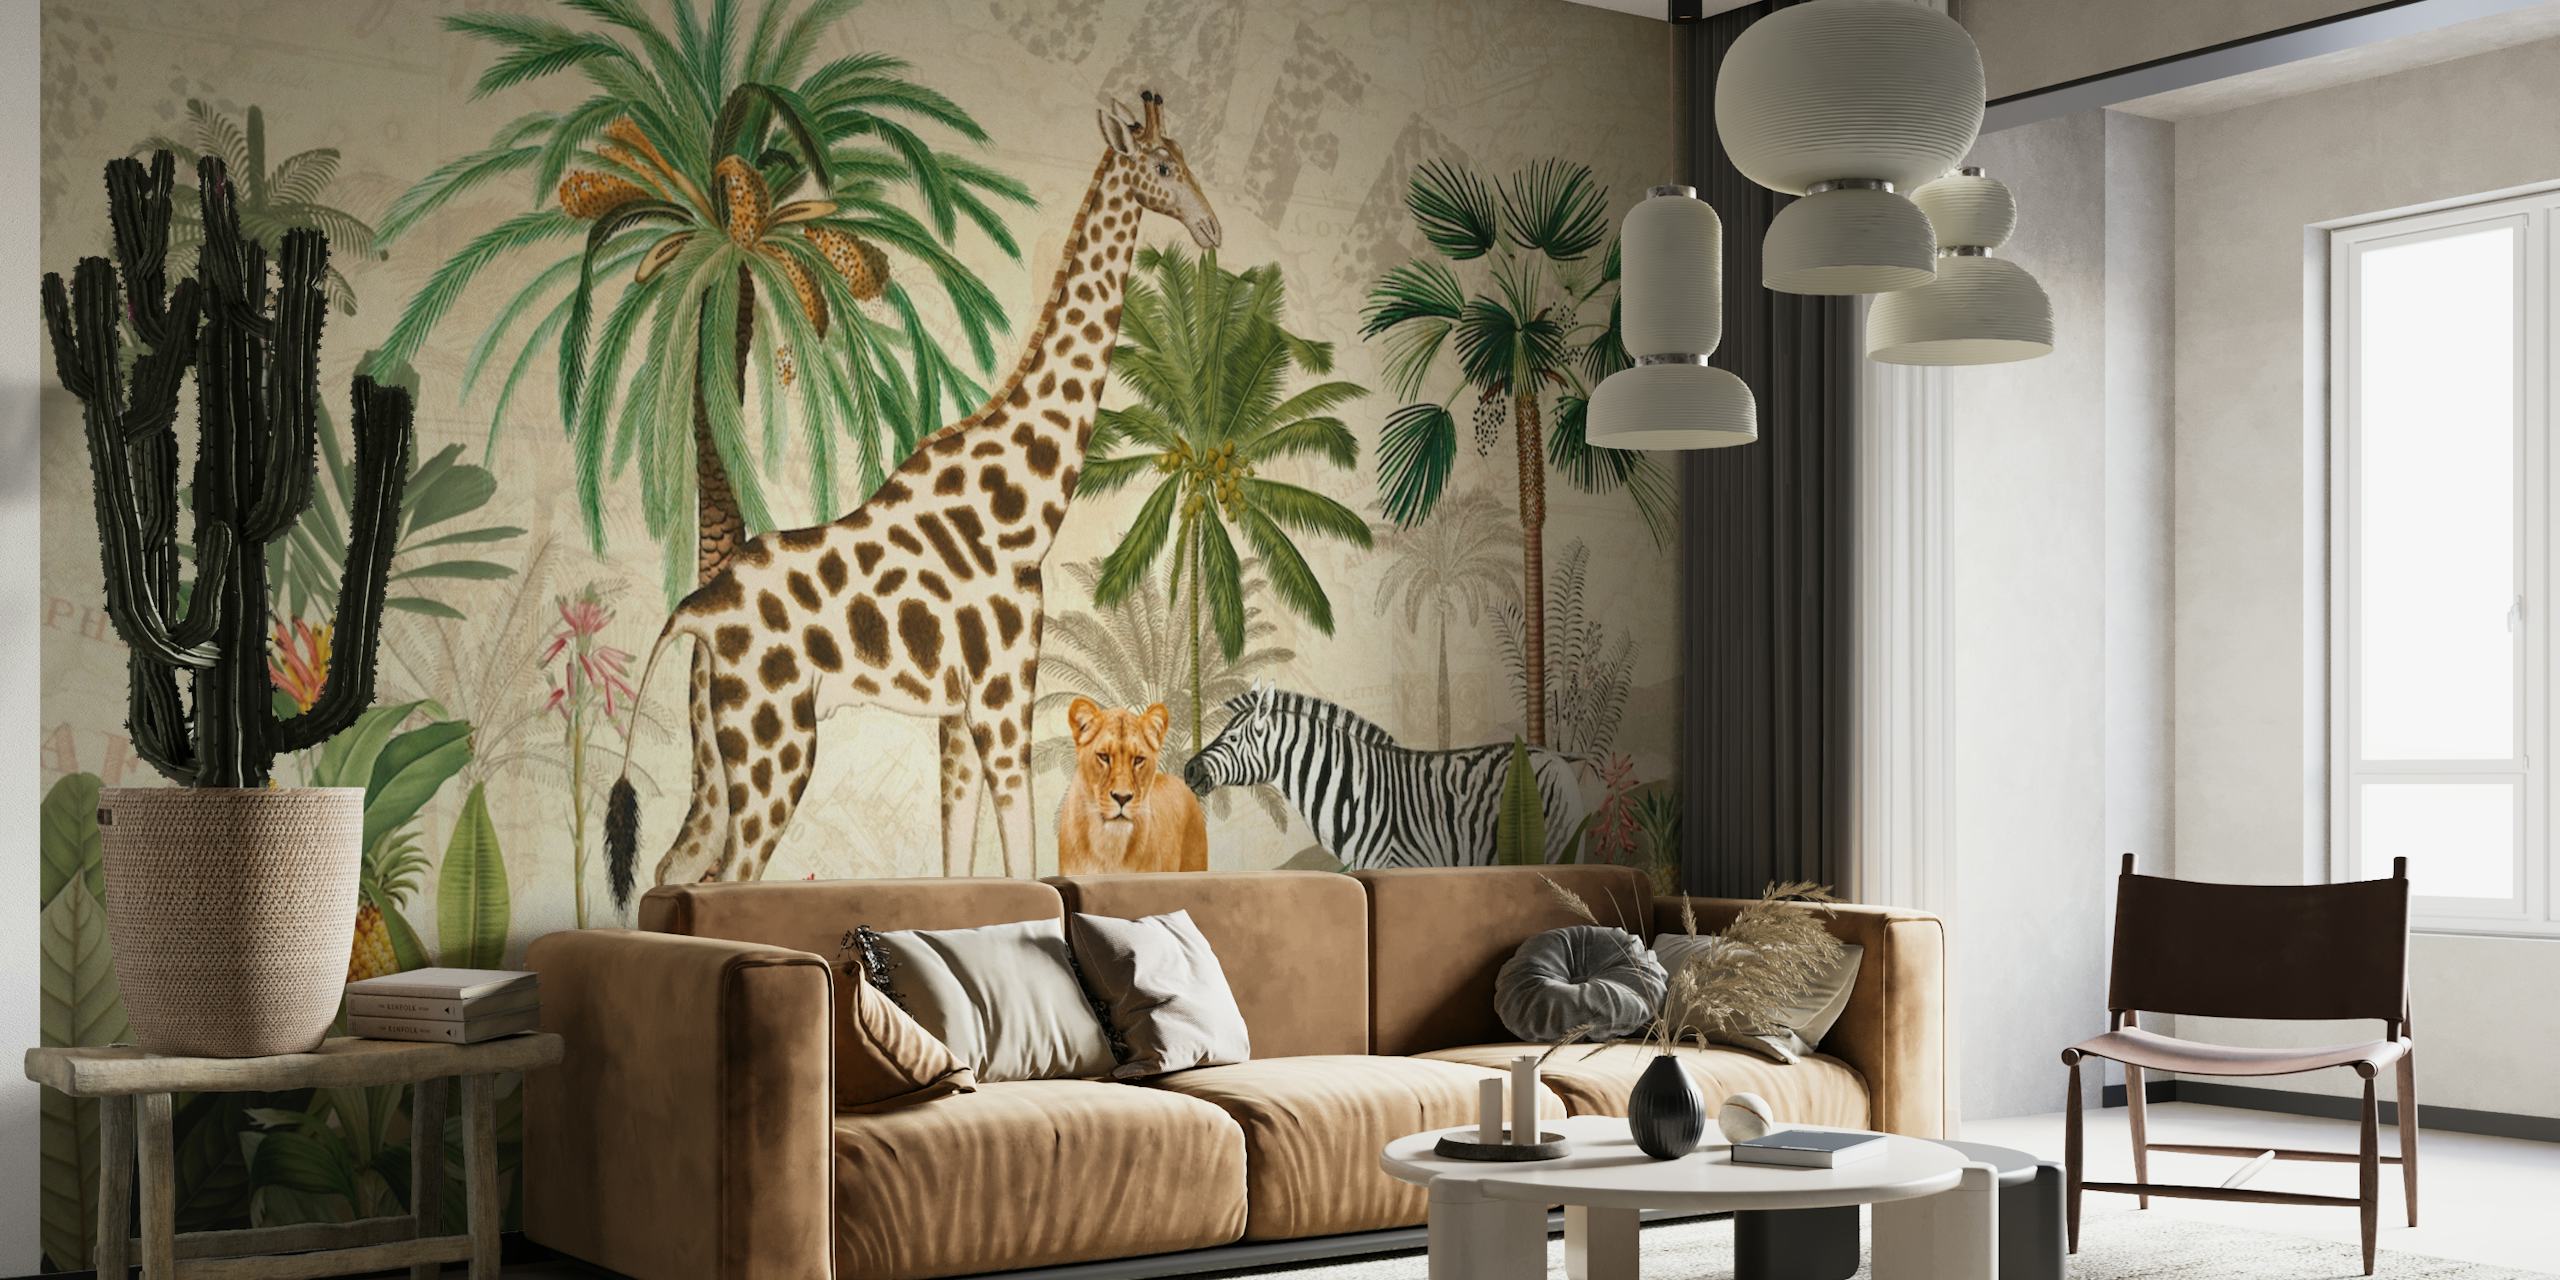 Papier peint mural safari dans la jungle de style vintage représentant des girafes, des léopards et des zèbres dans un cadre luxuriant